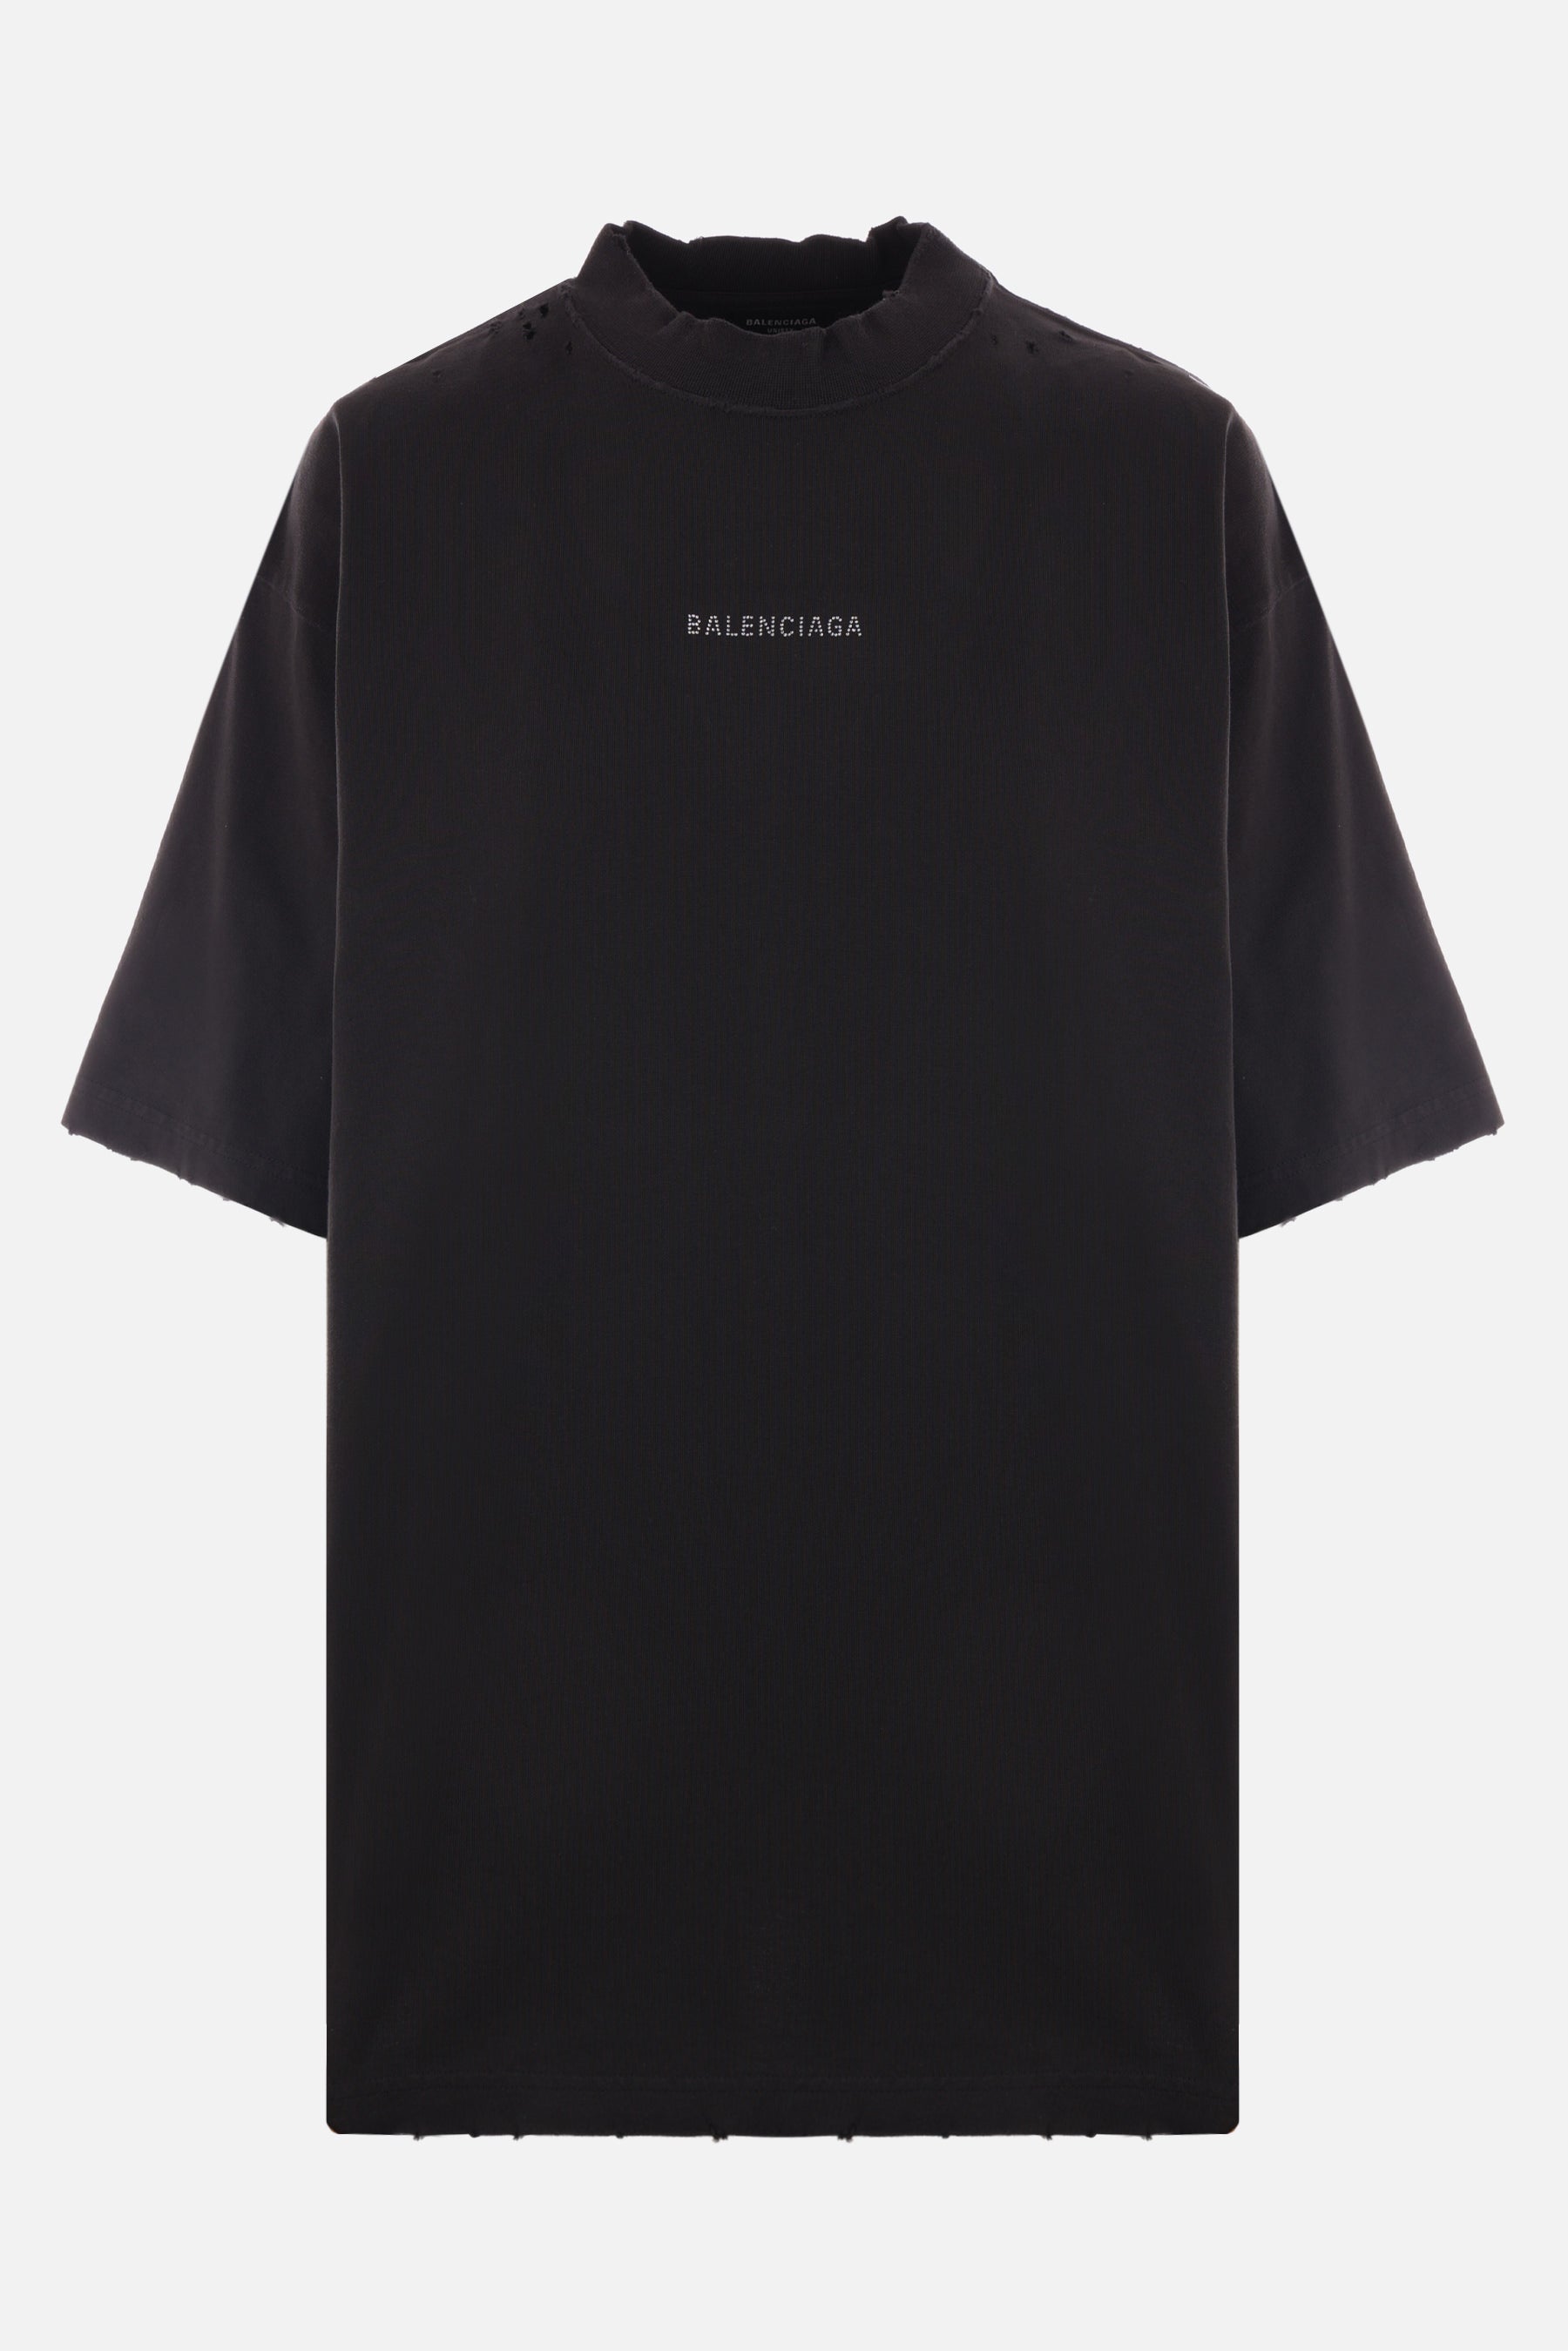 Balenciaga Back cotton t-shirt